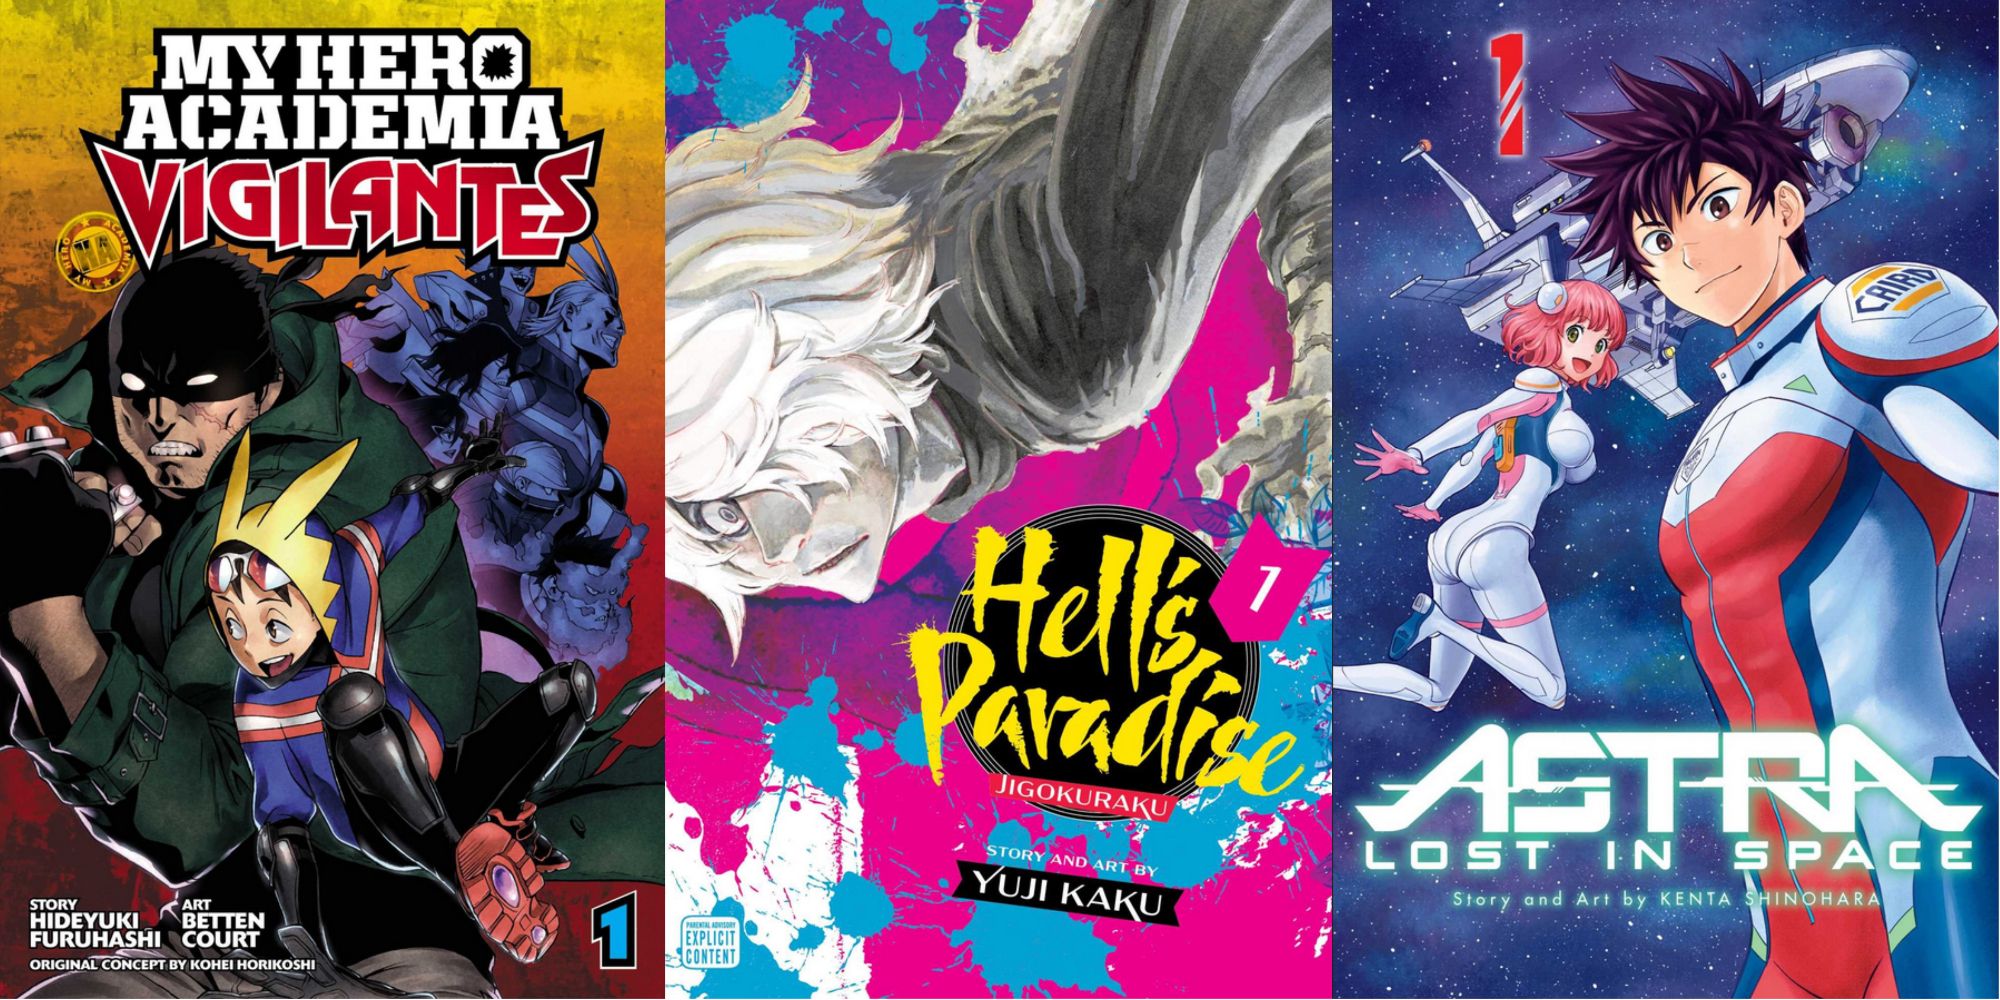 My Hero Academia Vigilantes, Hells Paradise Jigokuraku, Astra Lost in Space covers